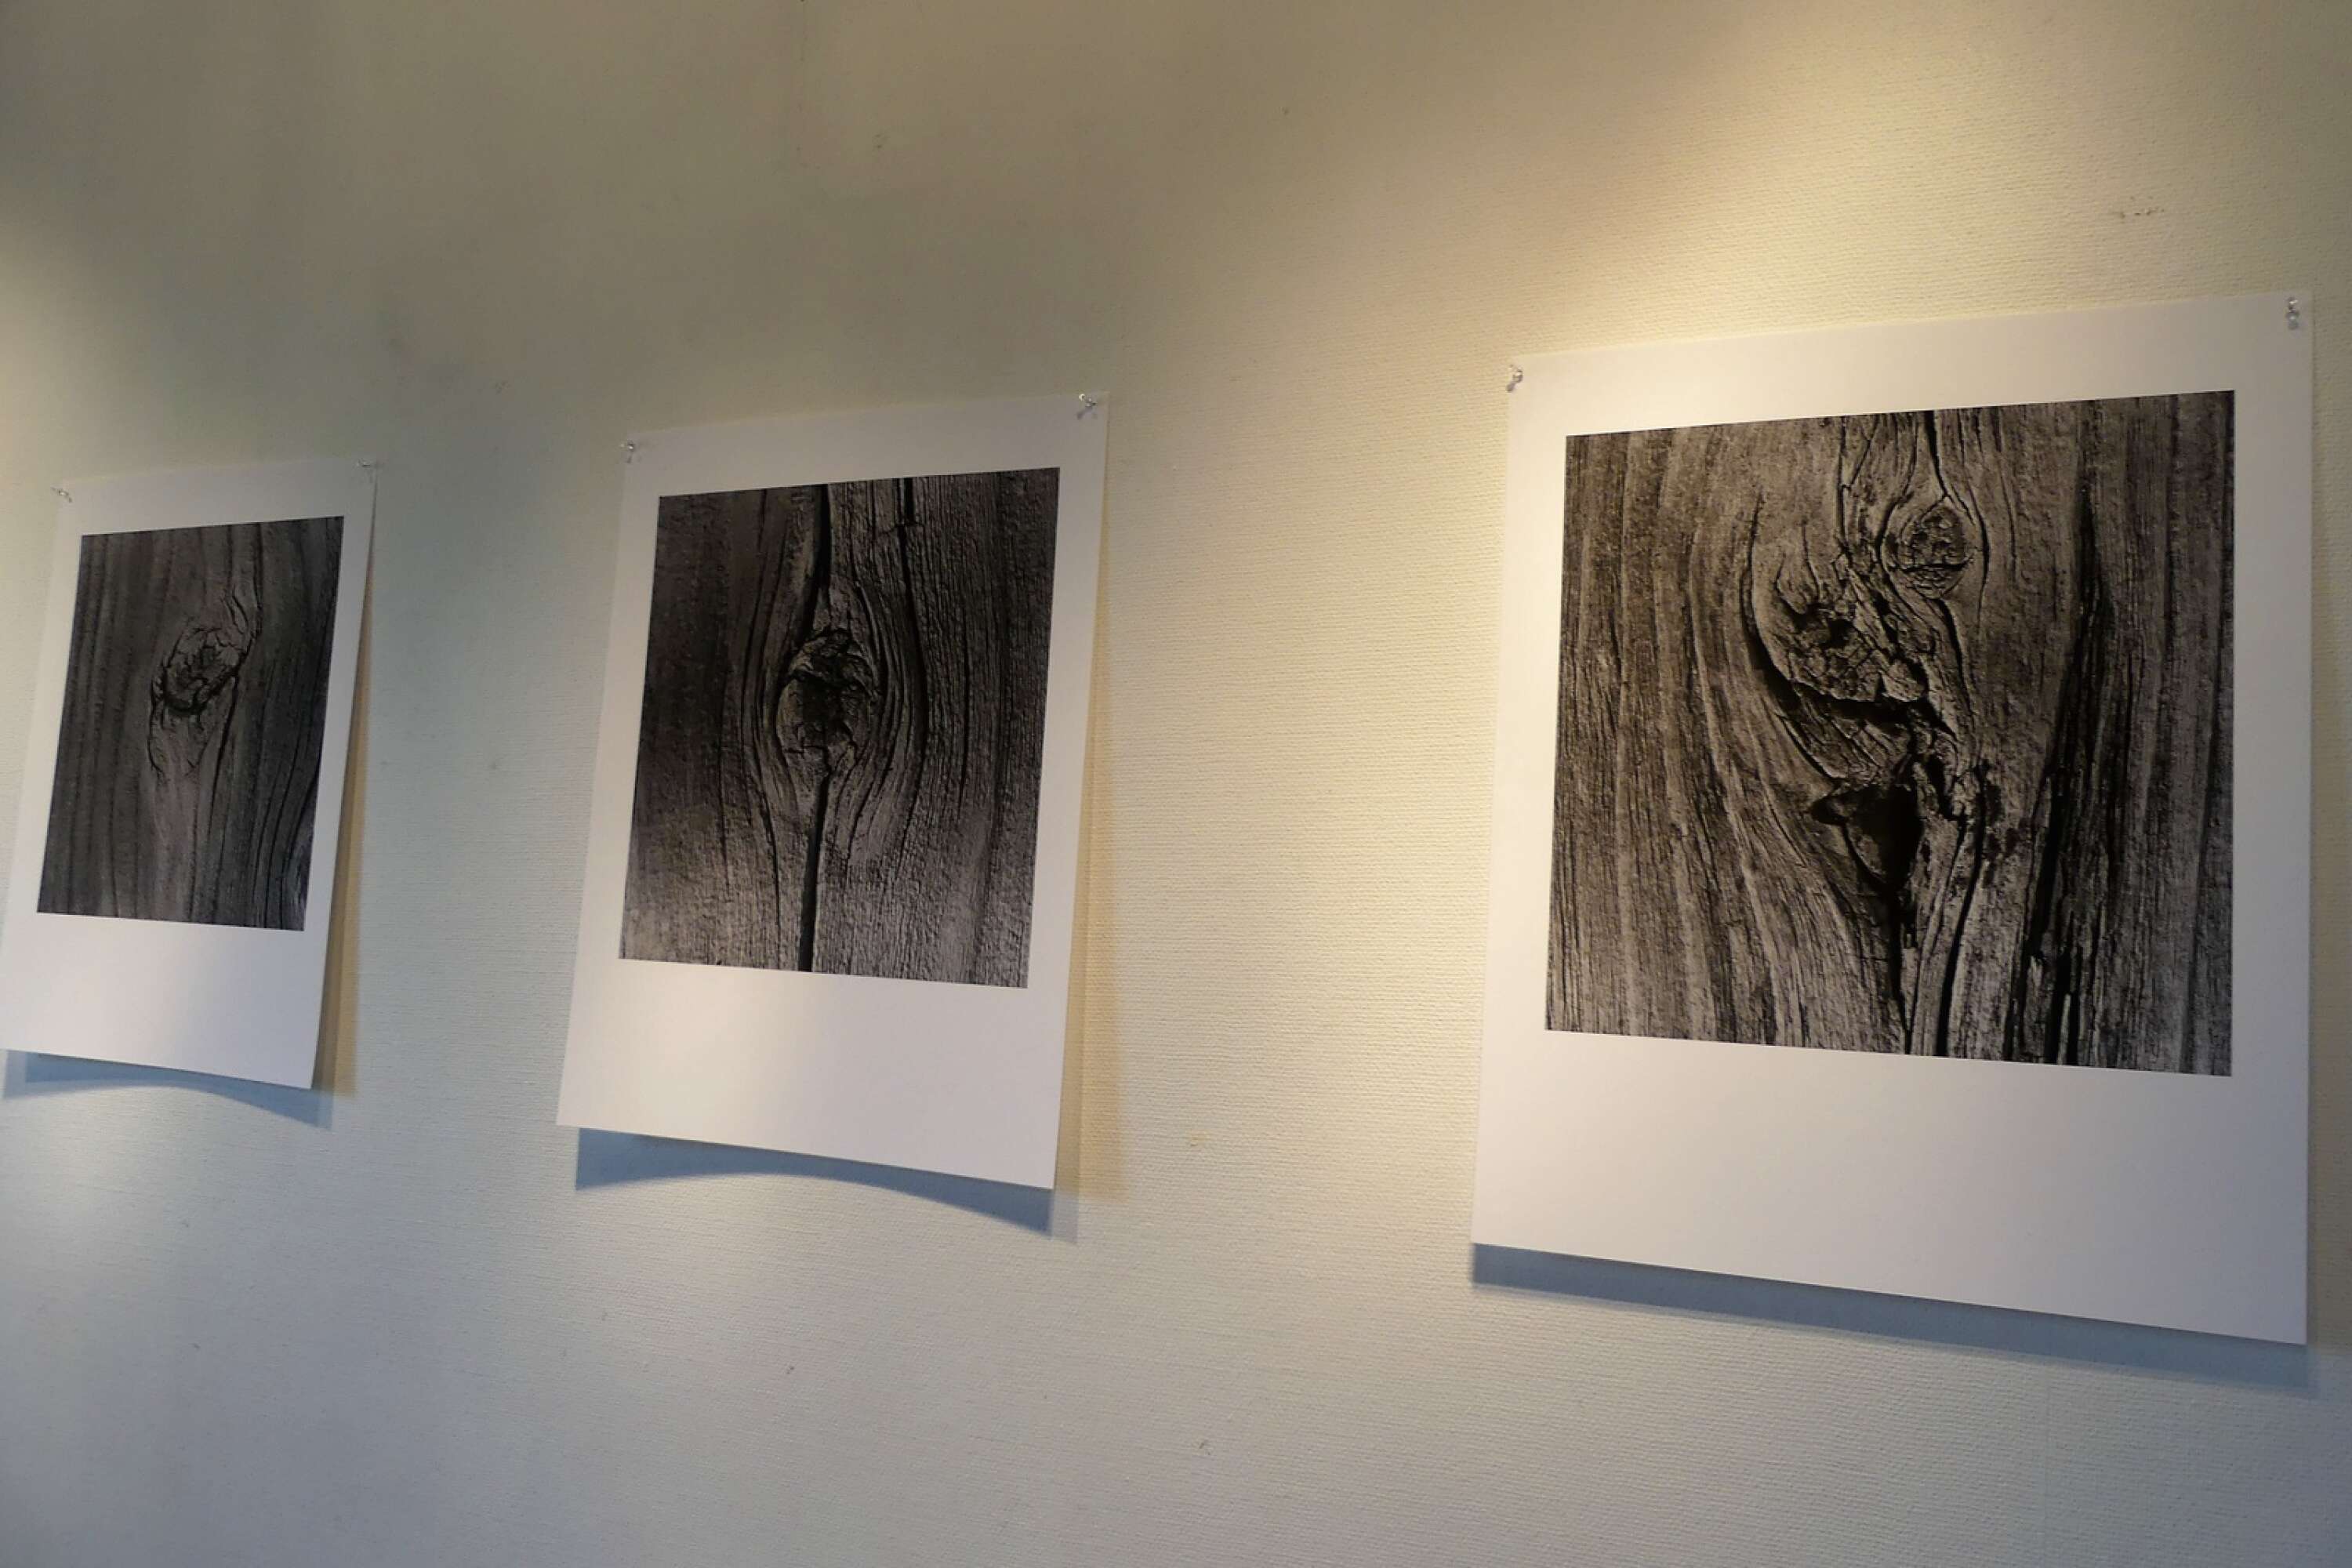 Närbilder av trädstammar utgör en stor del av utställningen.